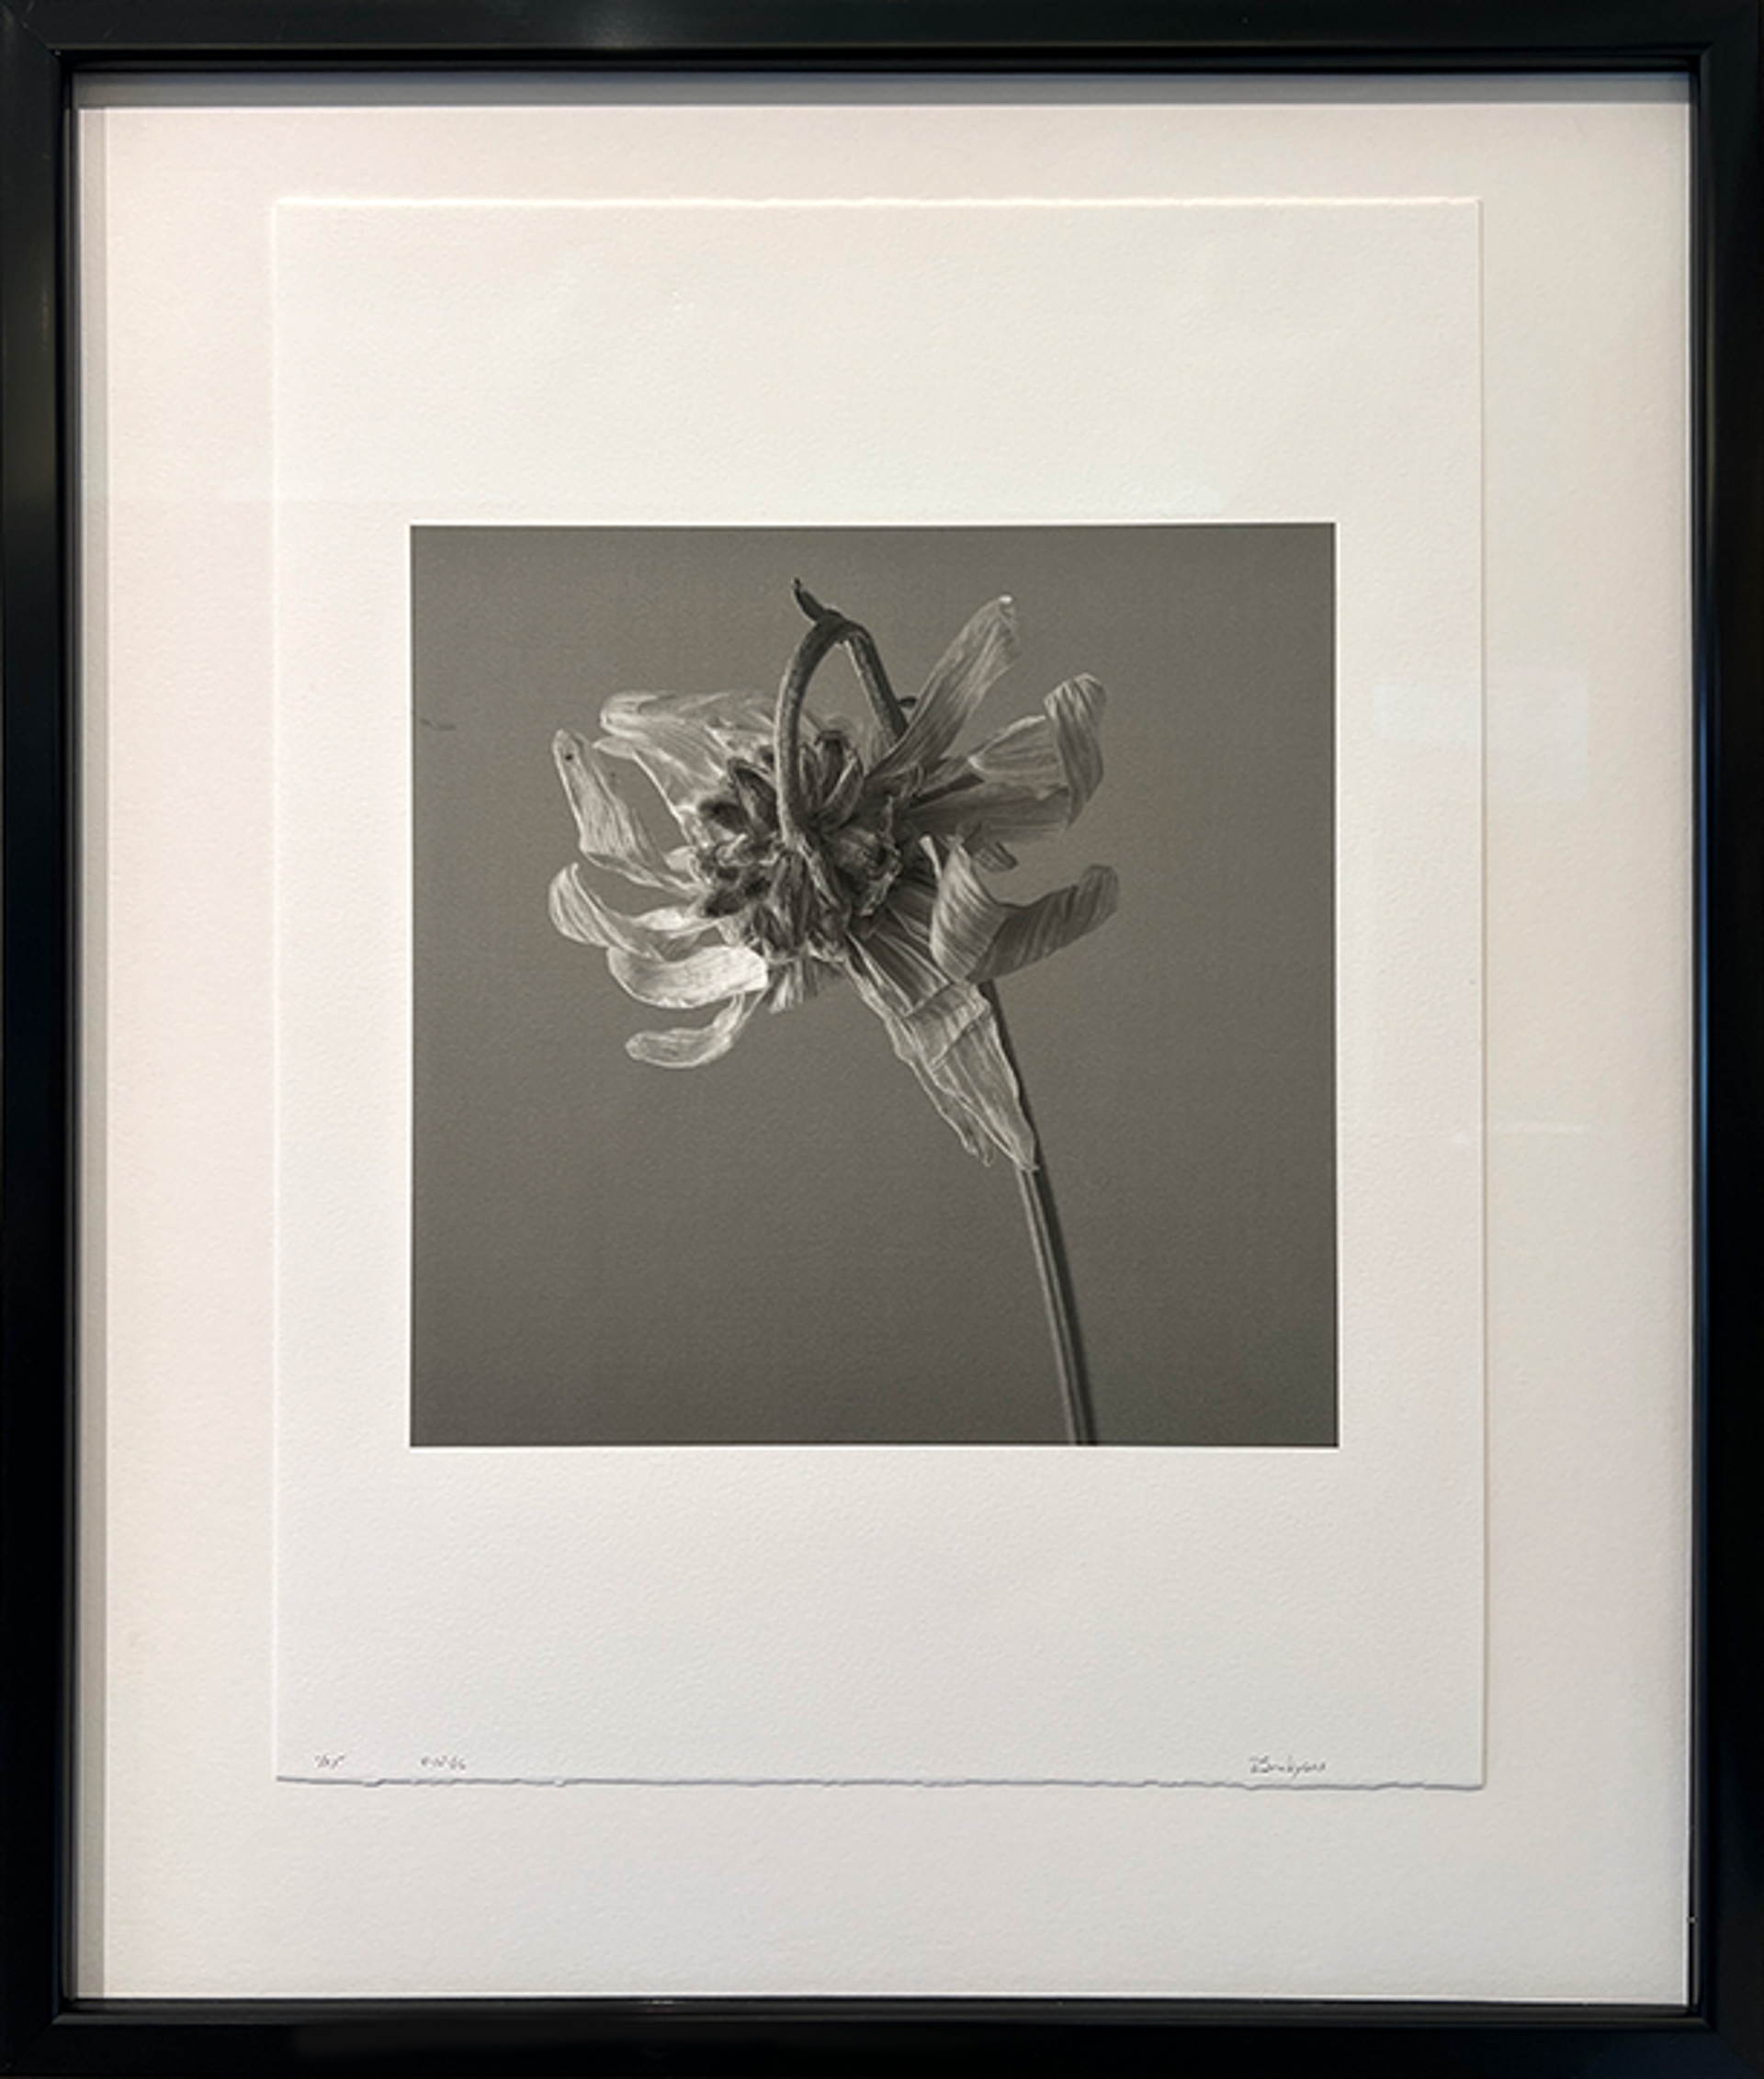 Dead Flower II by Richard Snodgrass